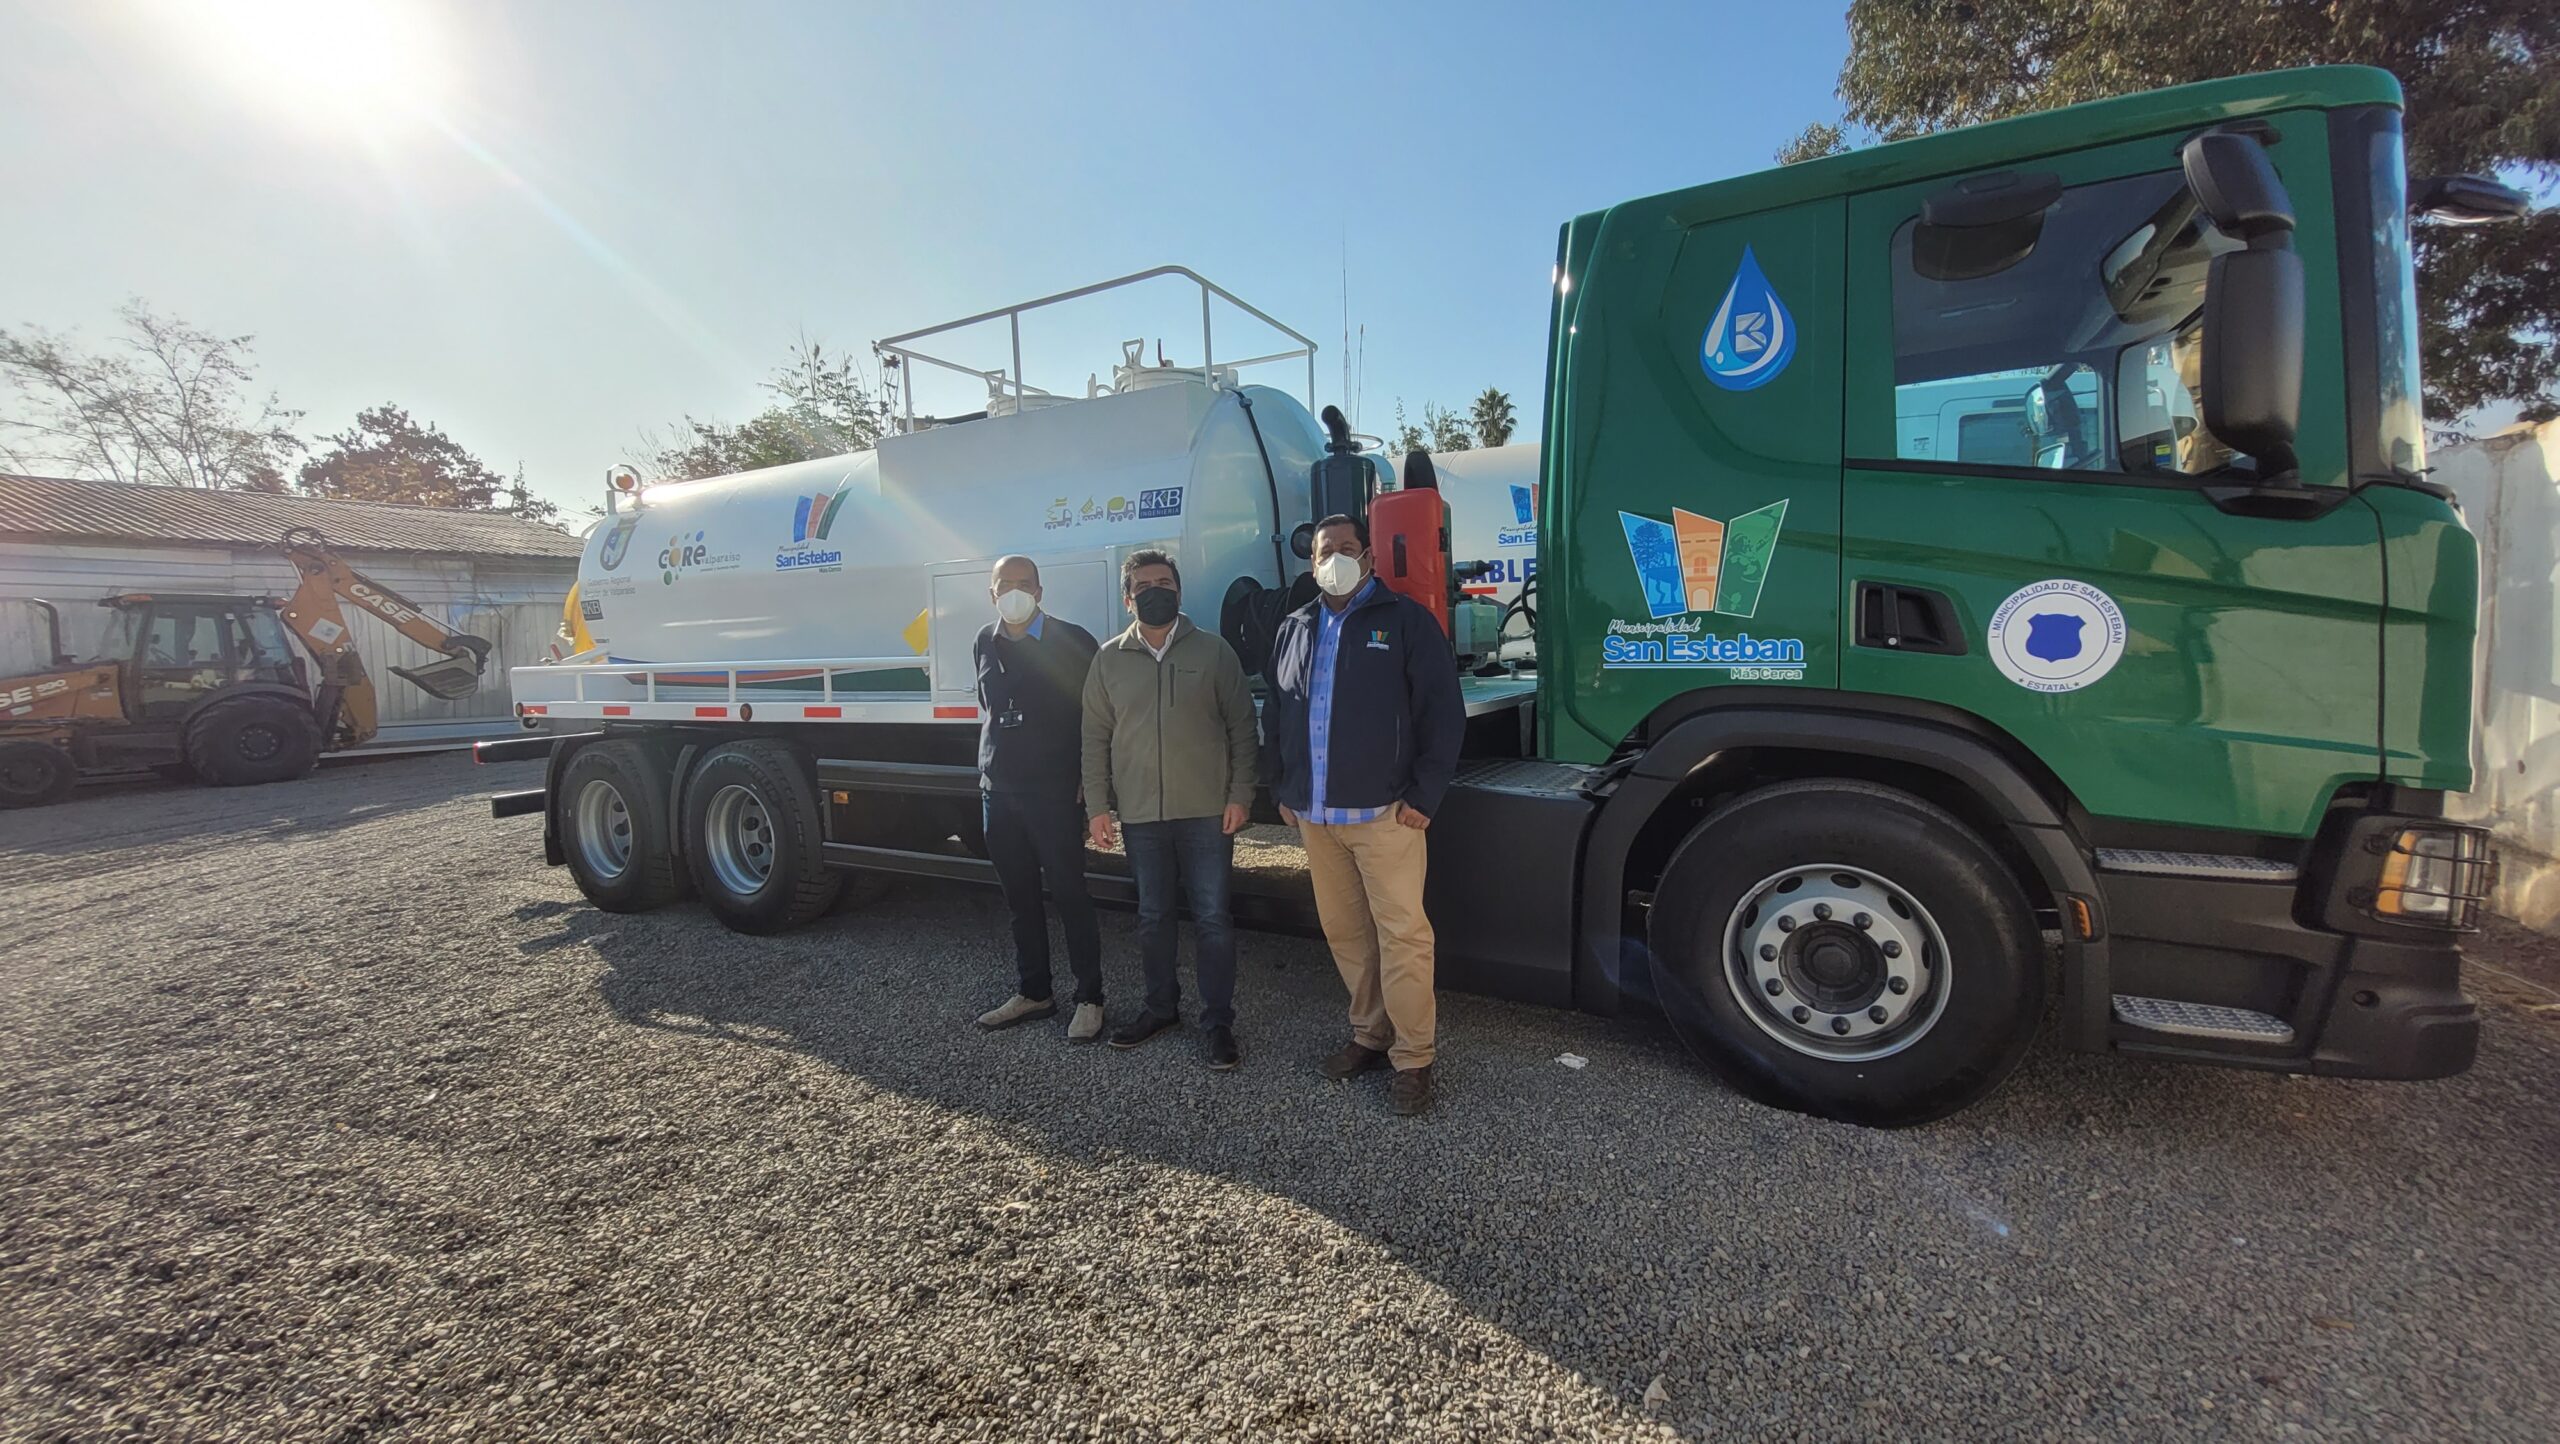 SAN ESTEBAN:  Municipio de San Esteban ya cuenta con su camión limpiafosas para apoyar la labor sanitaria en diversos sectores de la comuna